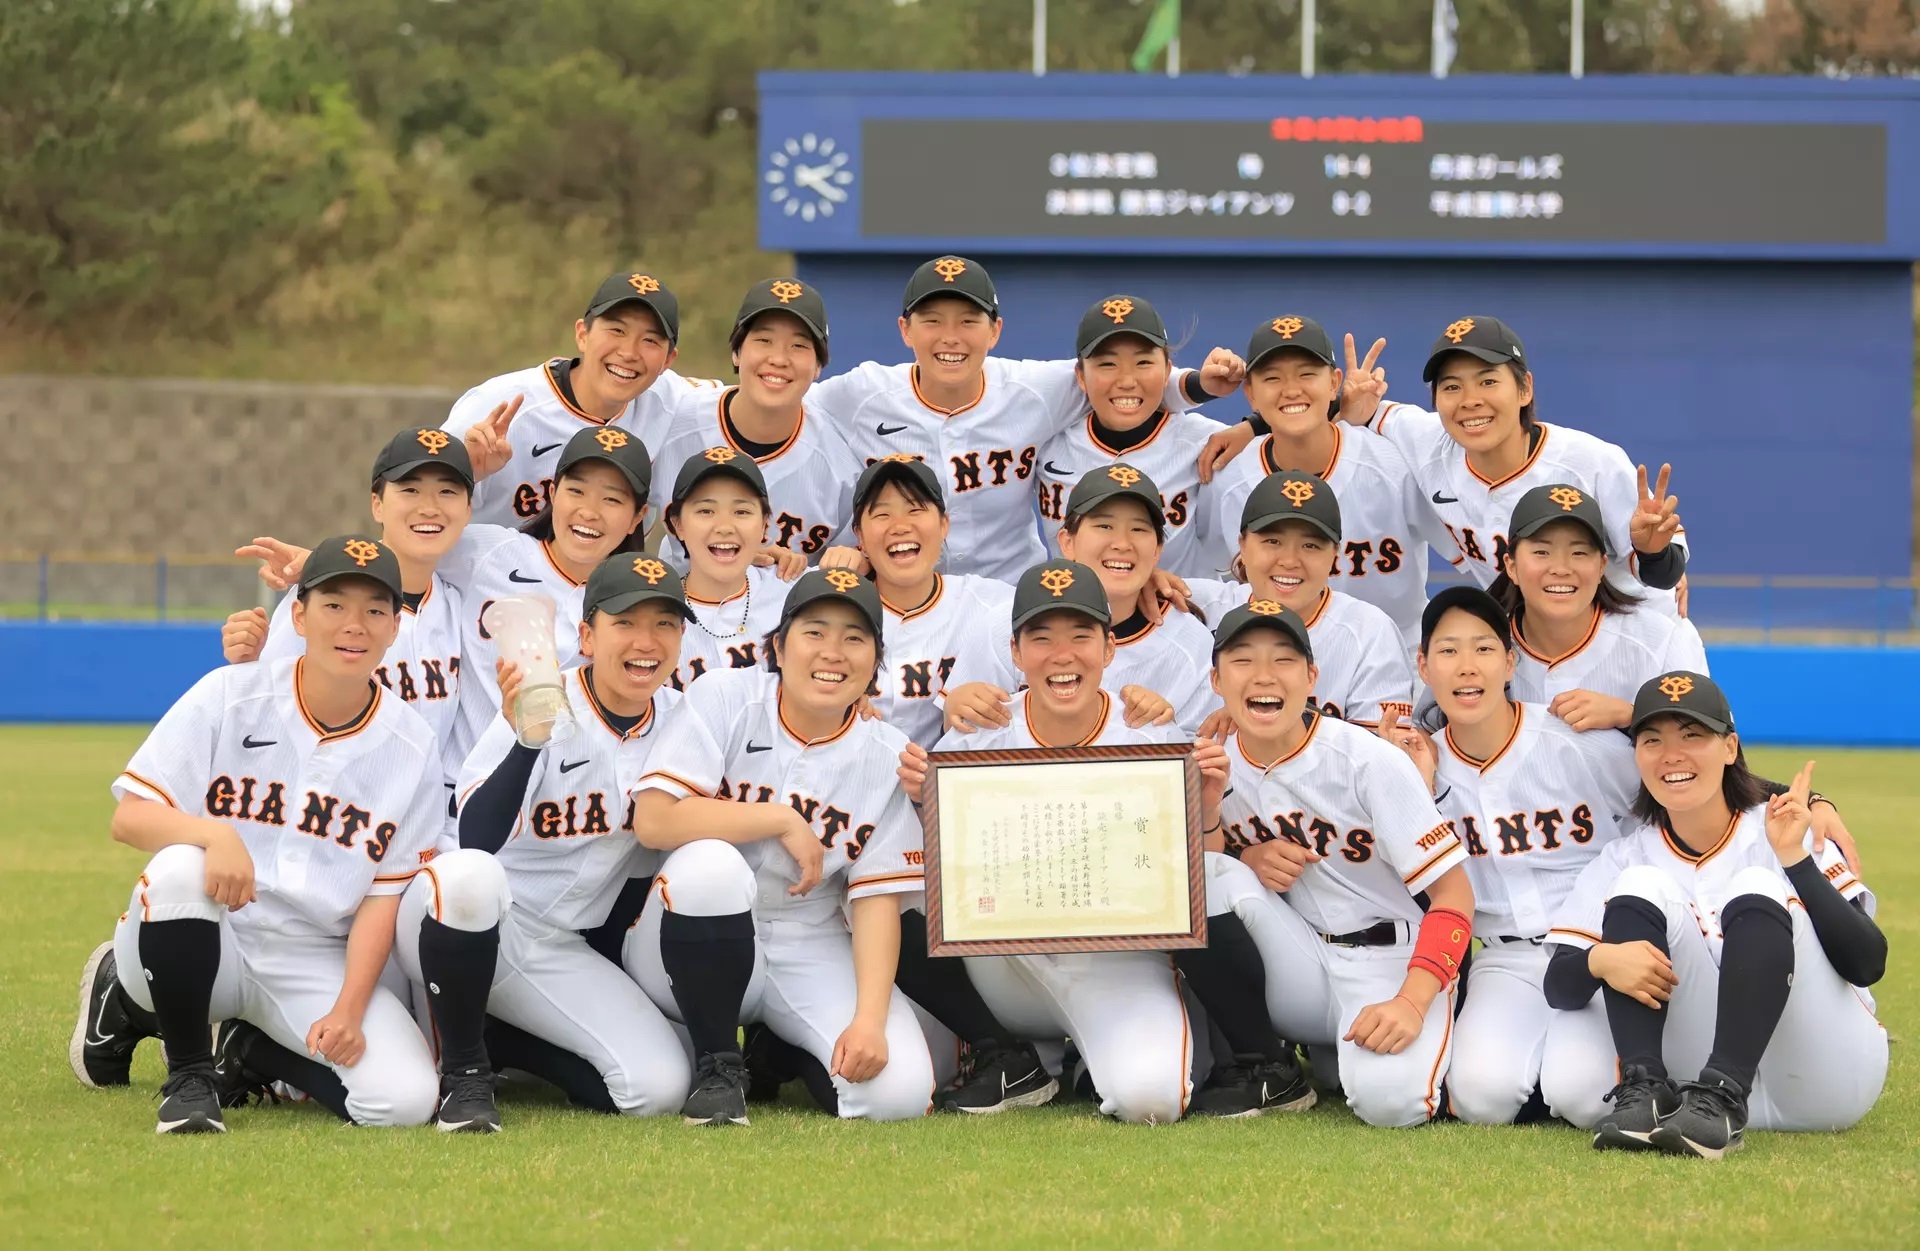 3月に『第10回女子硬式野球沖縄大会』で優勝したジャイアンツ女子